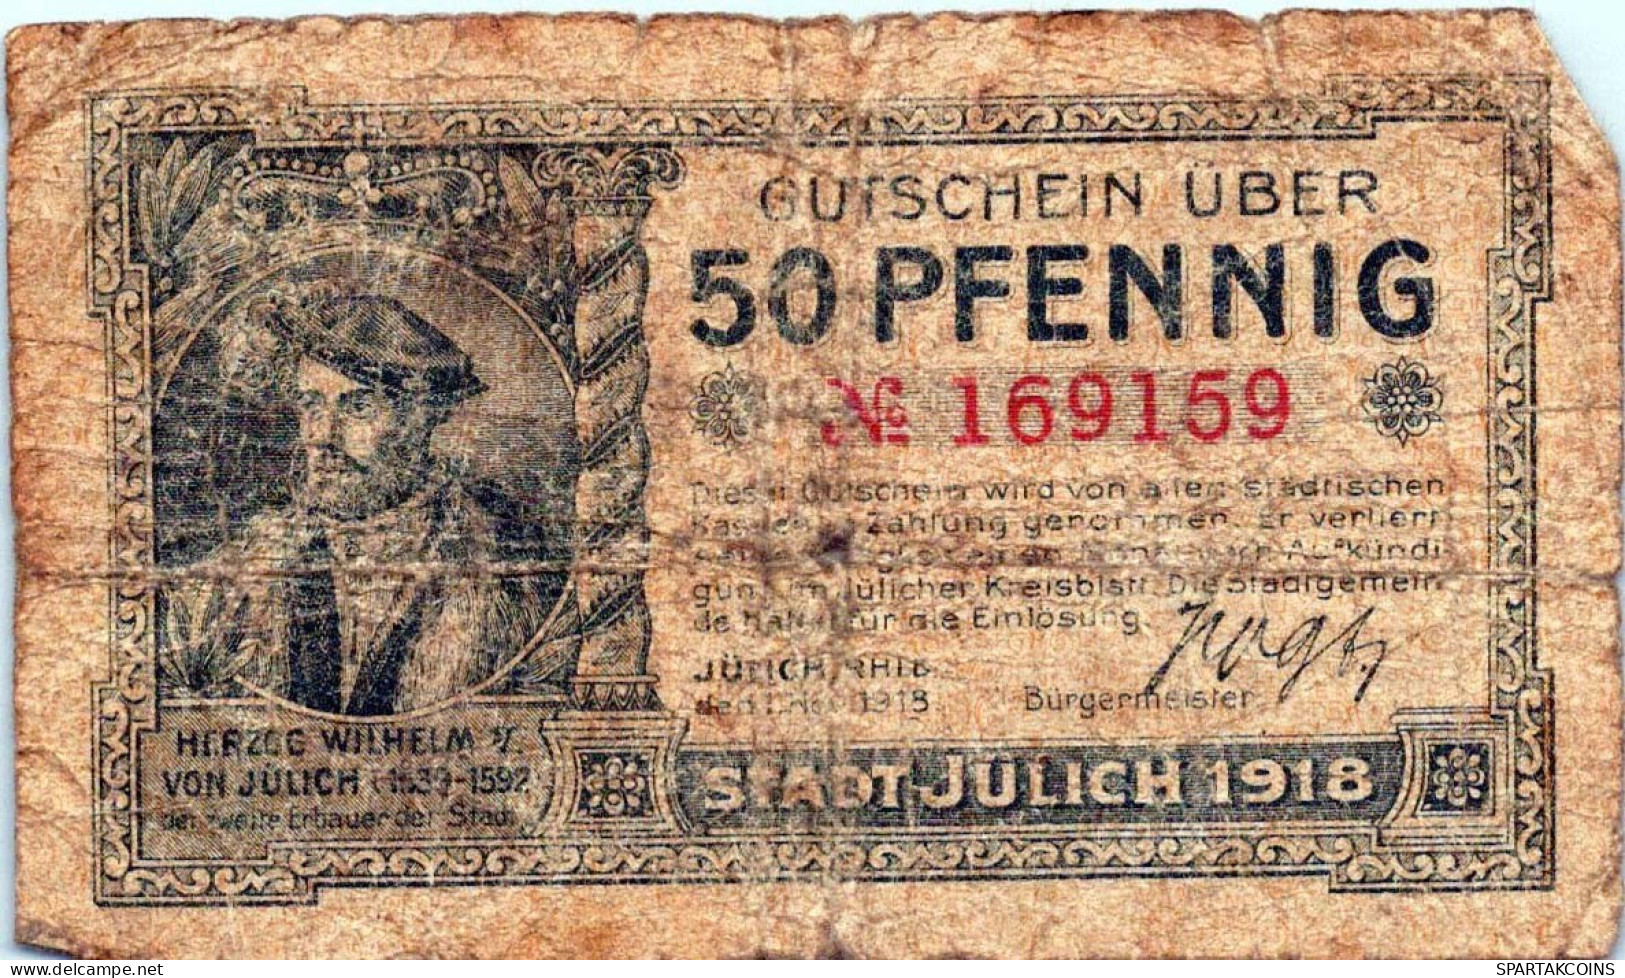 50 PFENNIG 1918 Stadt JÜLICH Rhine DEUTSCHLAND Notgeld Banknote #PG487 - [11] Local Banknote Issues